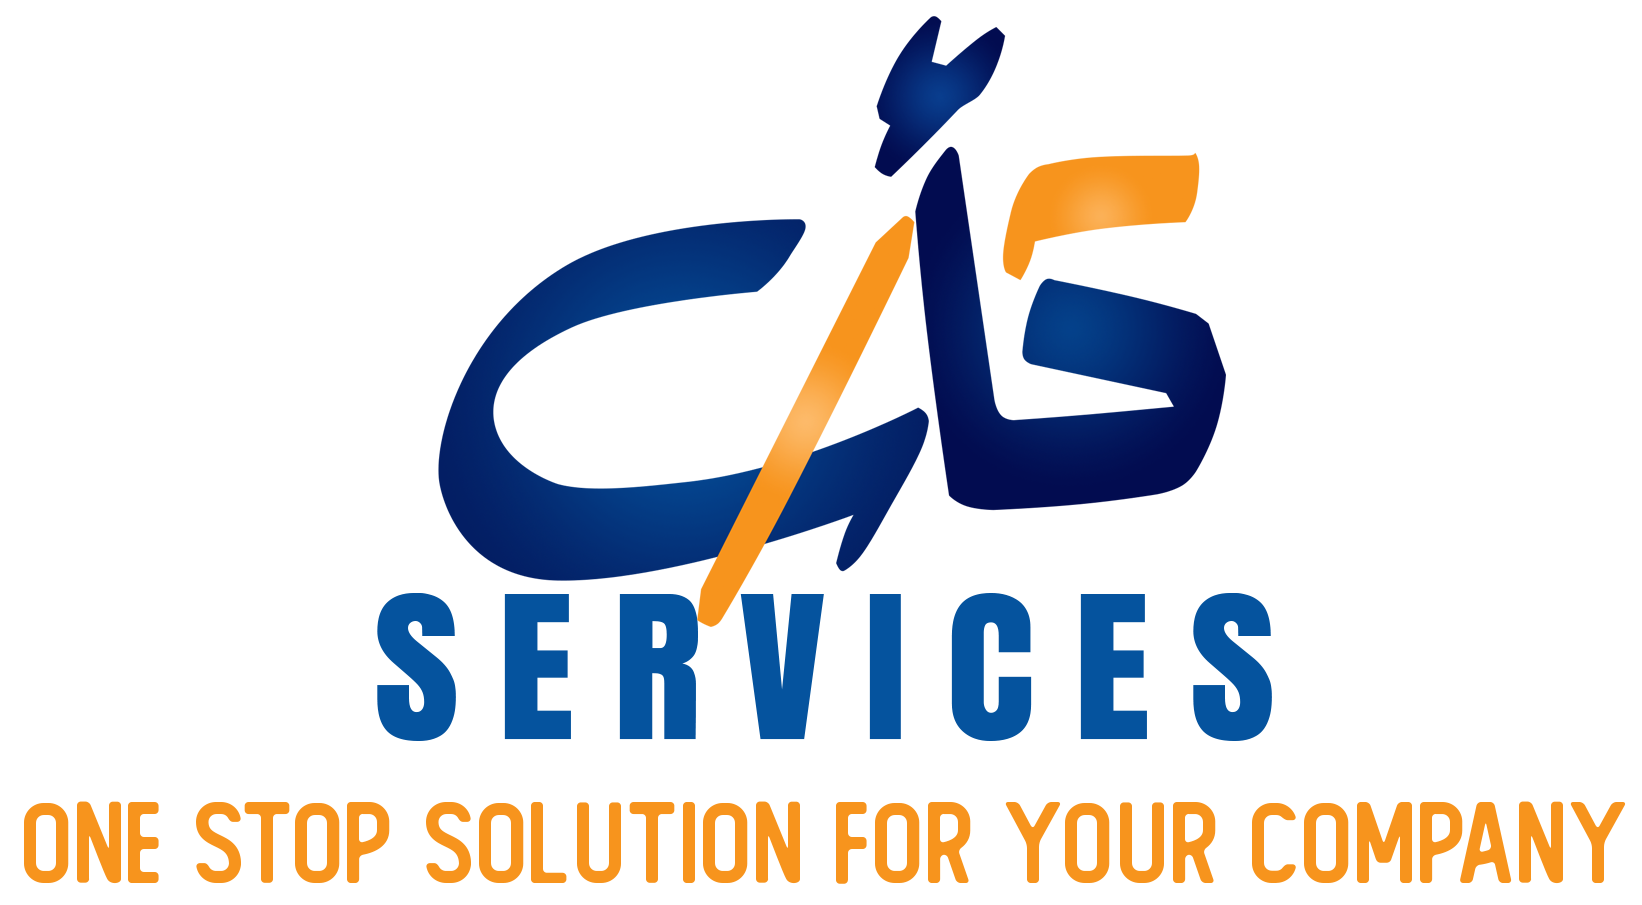 CAS Services